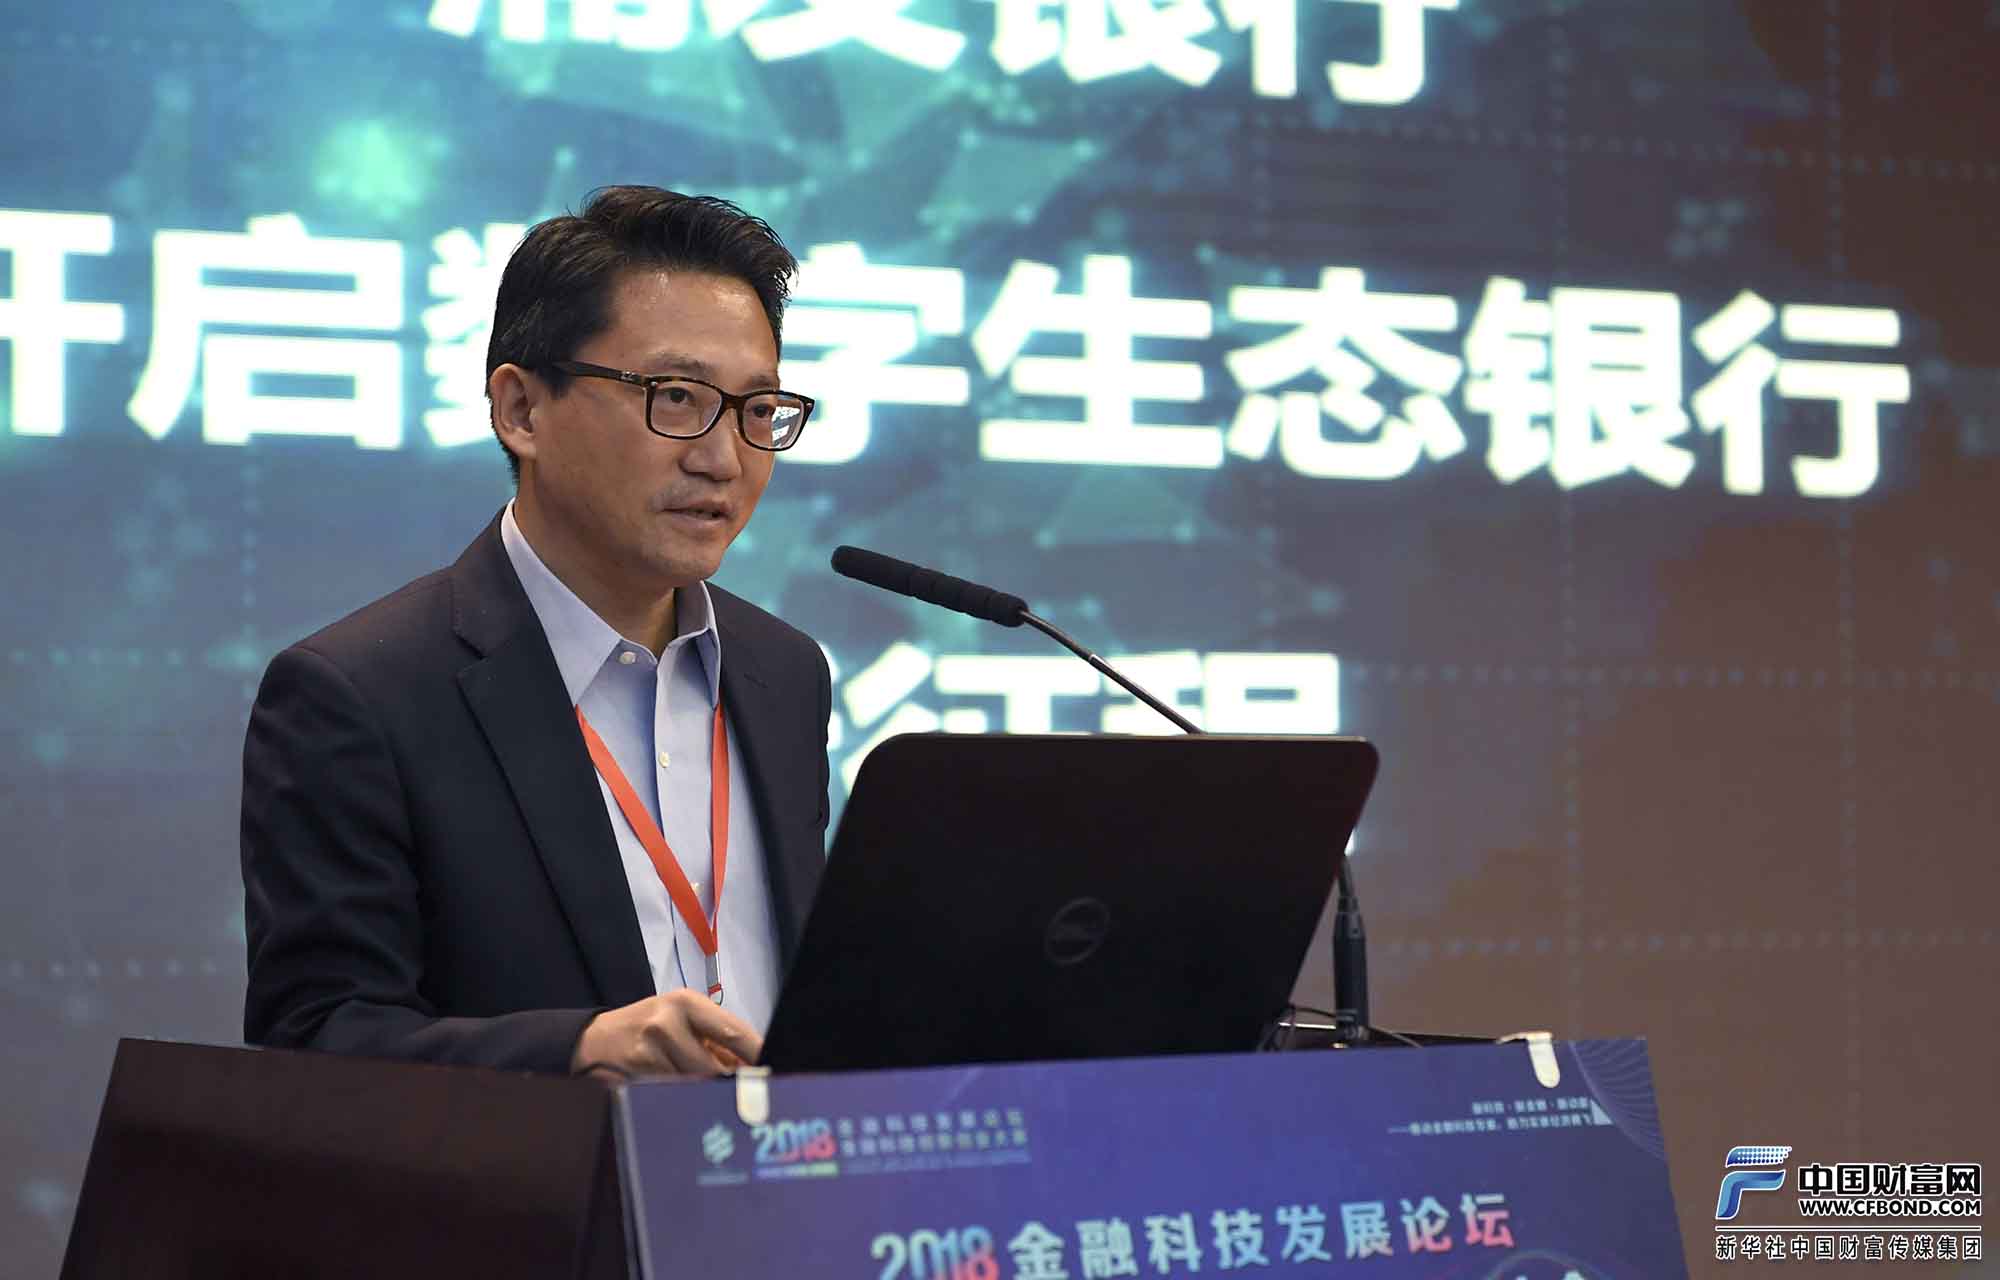 上海浦东发展银行信息科技部副总经理黄炜演讲